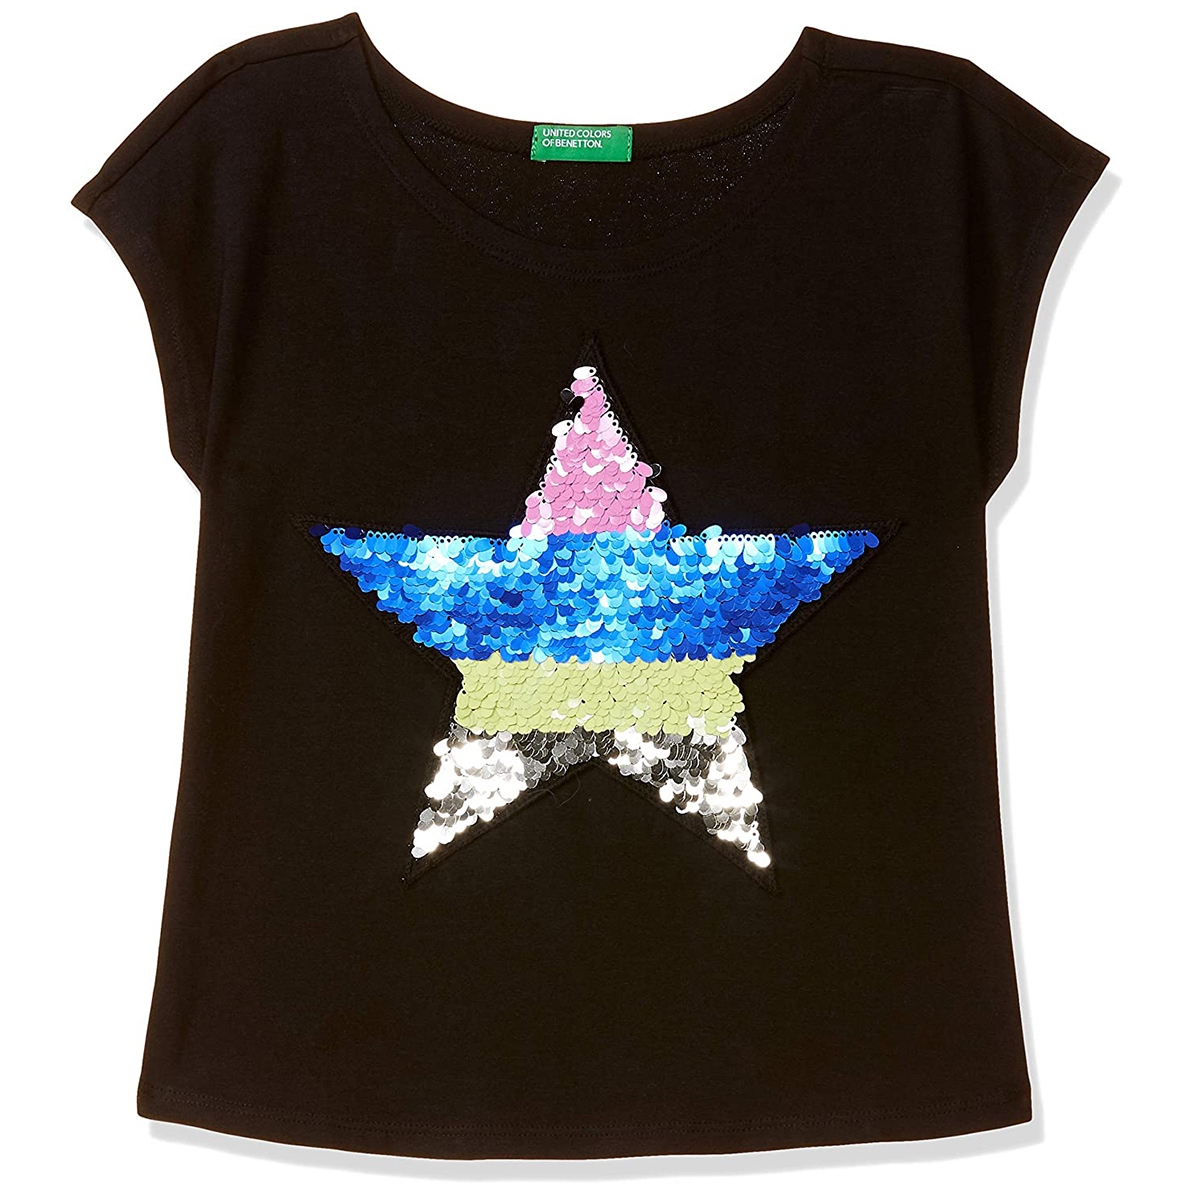 United Colors of Benetton Girl's Regular T-Shirt- Black